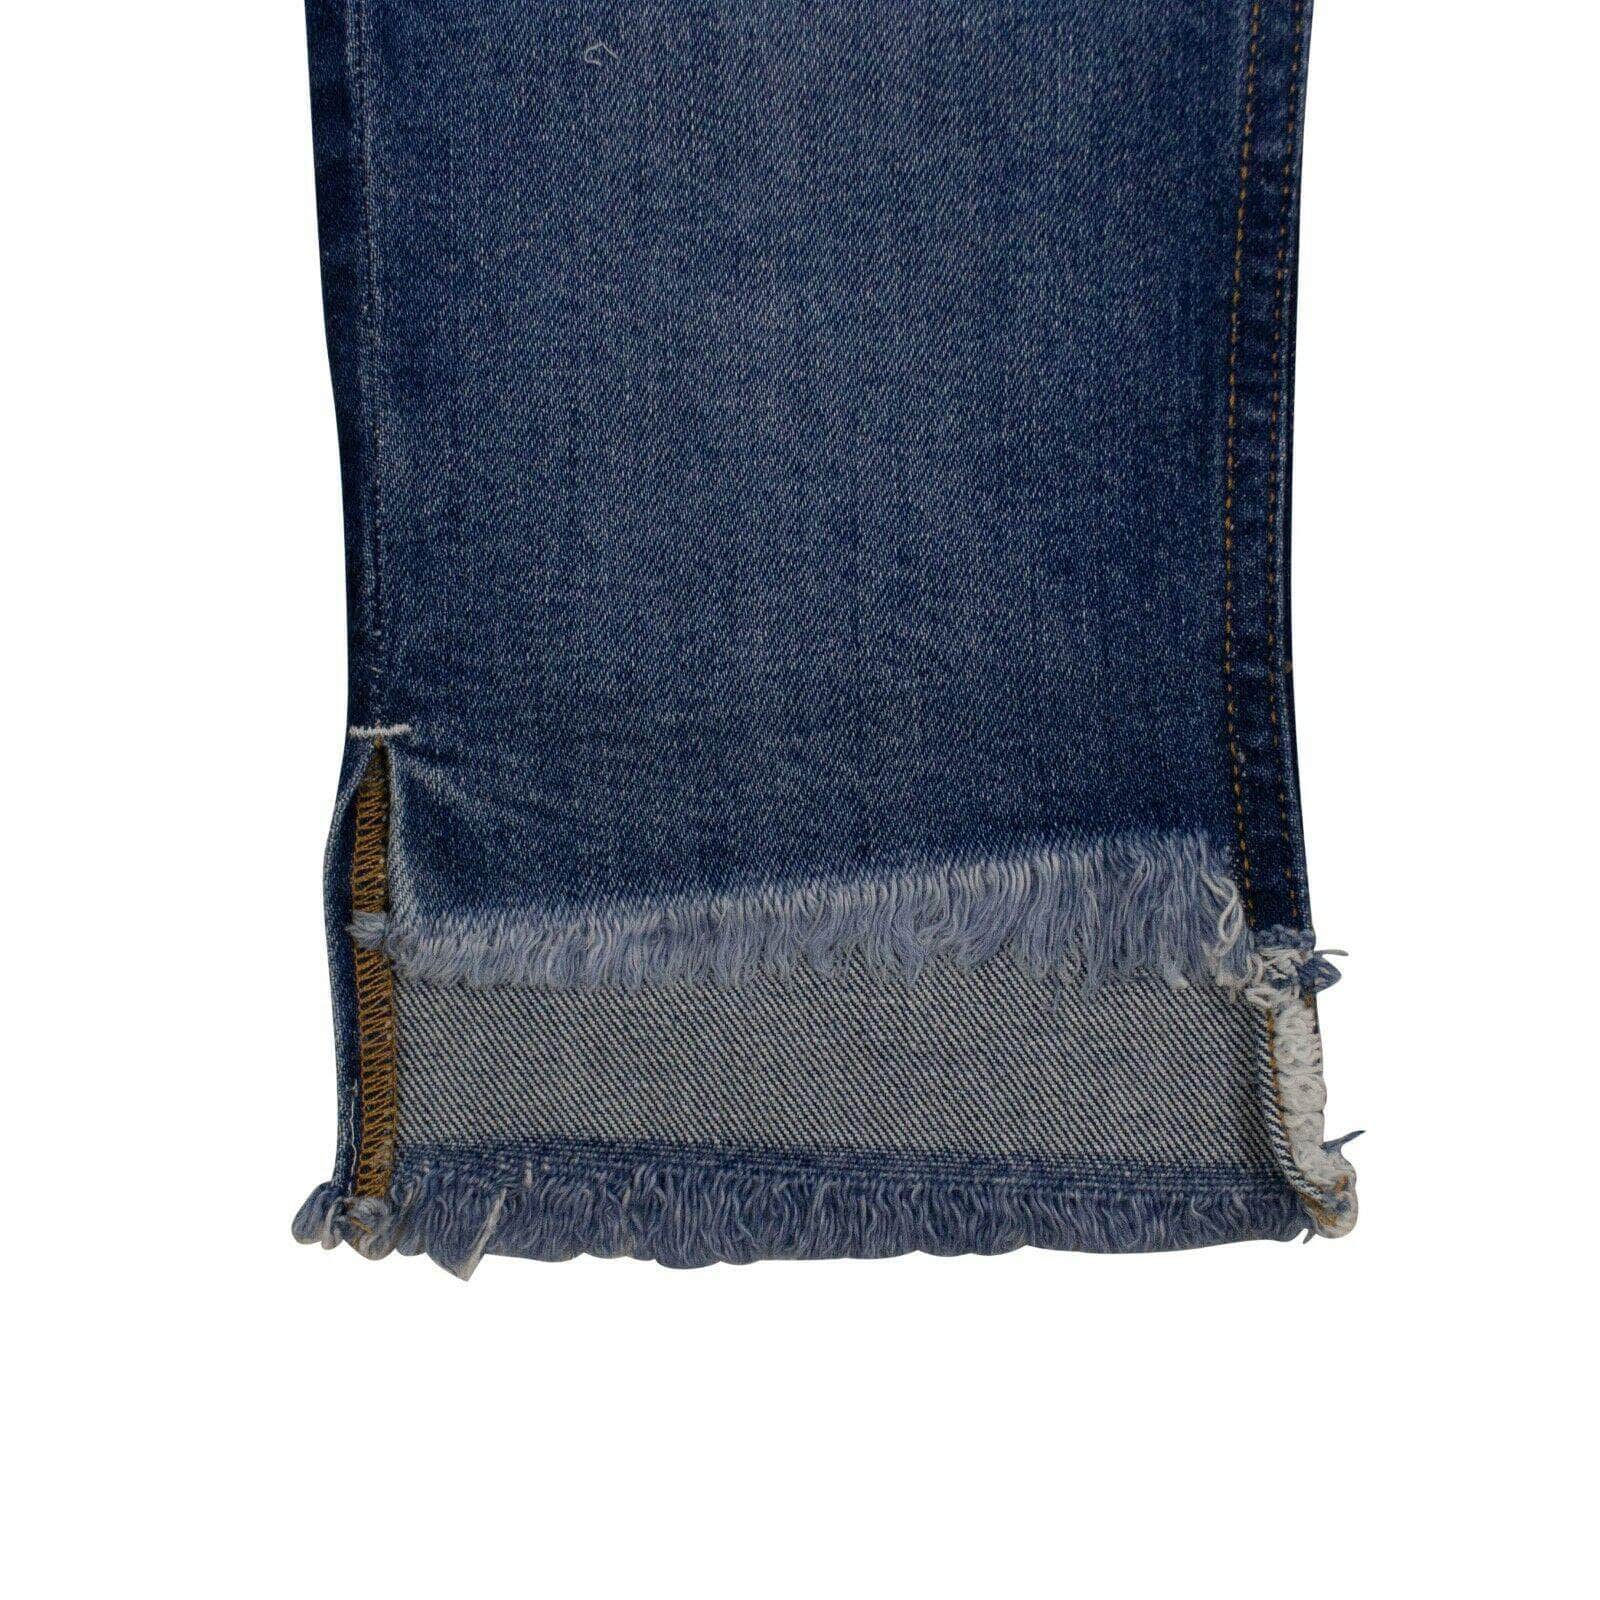 Marcelo Burlon Women's Jeans Denim Vintage Two-Tone Slim Jeans - Blue